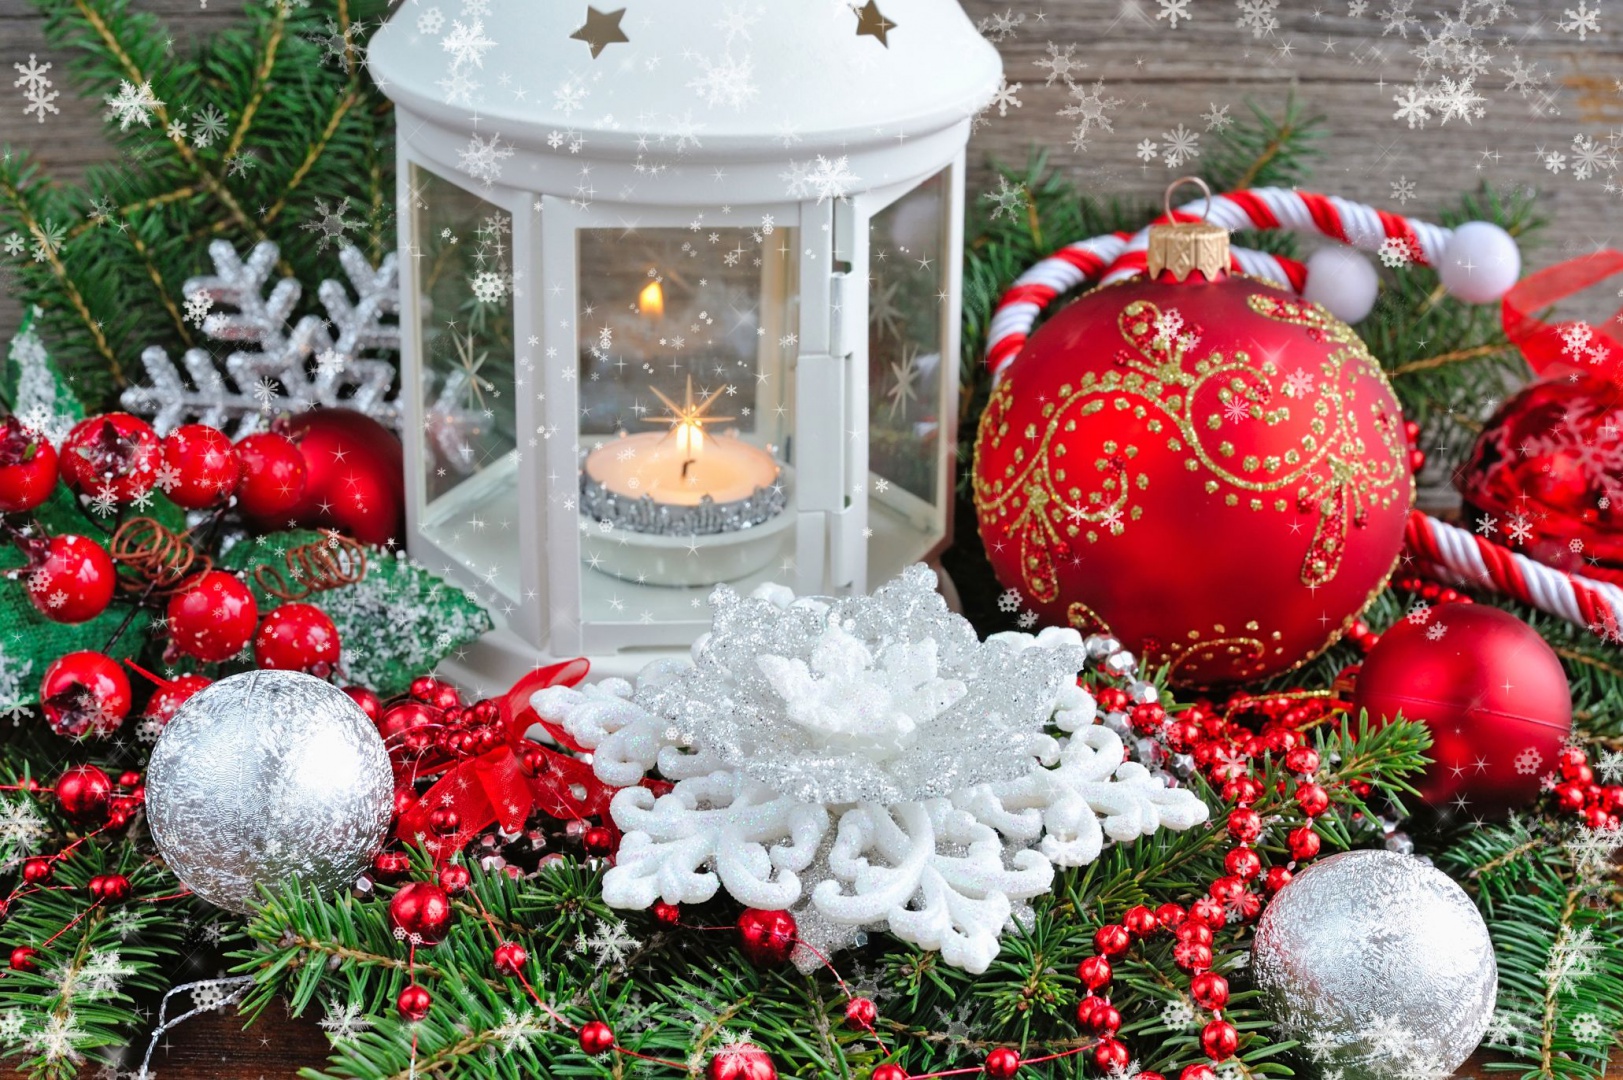 Duet czerwieni i bieli nawiązuje do tradycyjnej kolorystyki bożonarodzeniowej. Fot. Shutterstock.